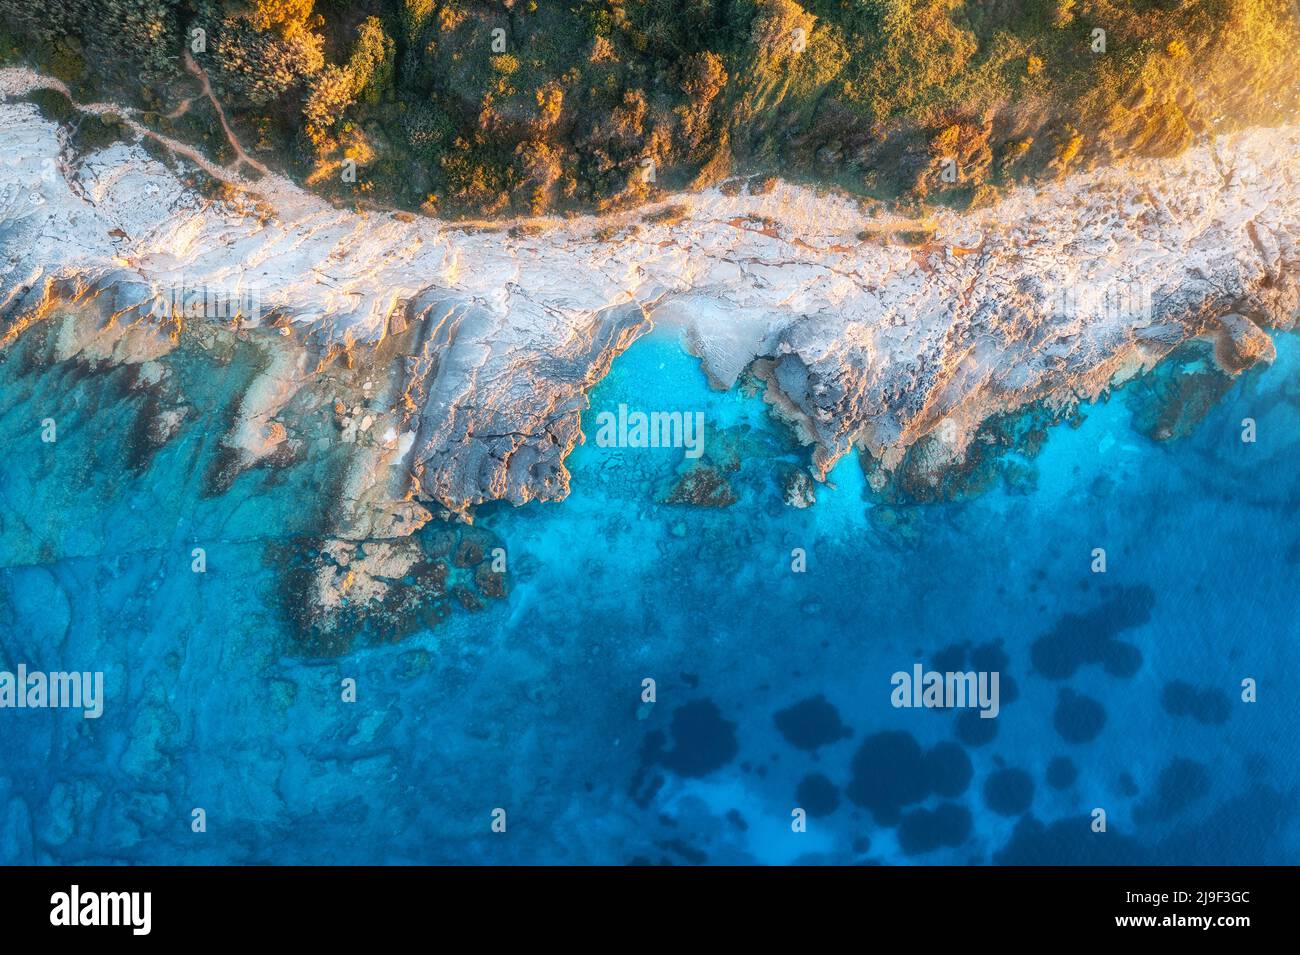 Vista aérea del mar azul, rocas en aguas claras, playa, árboles verdes Foto de stock